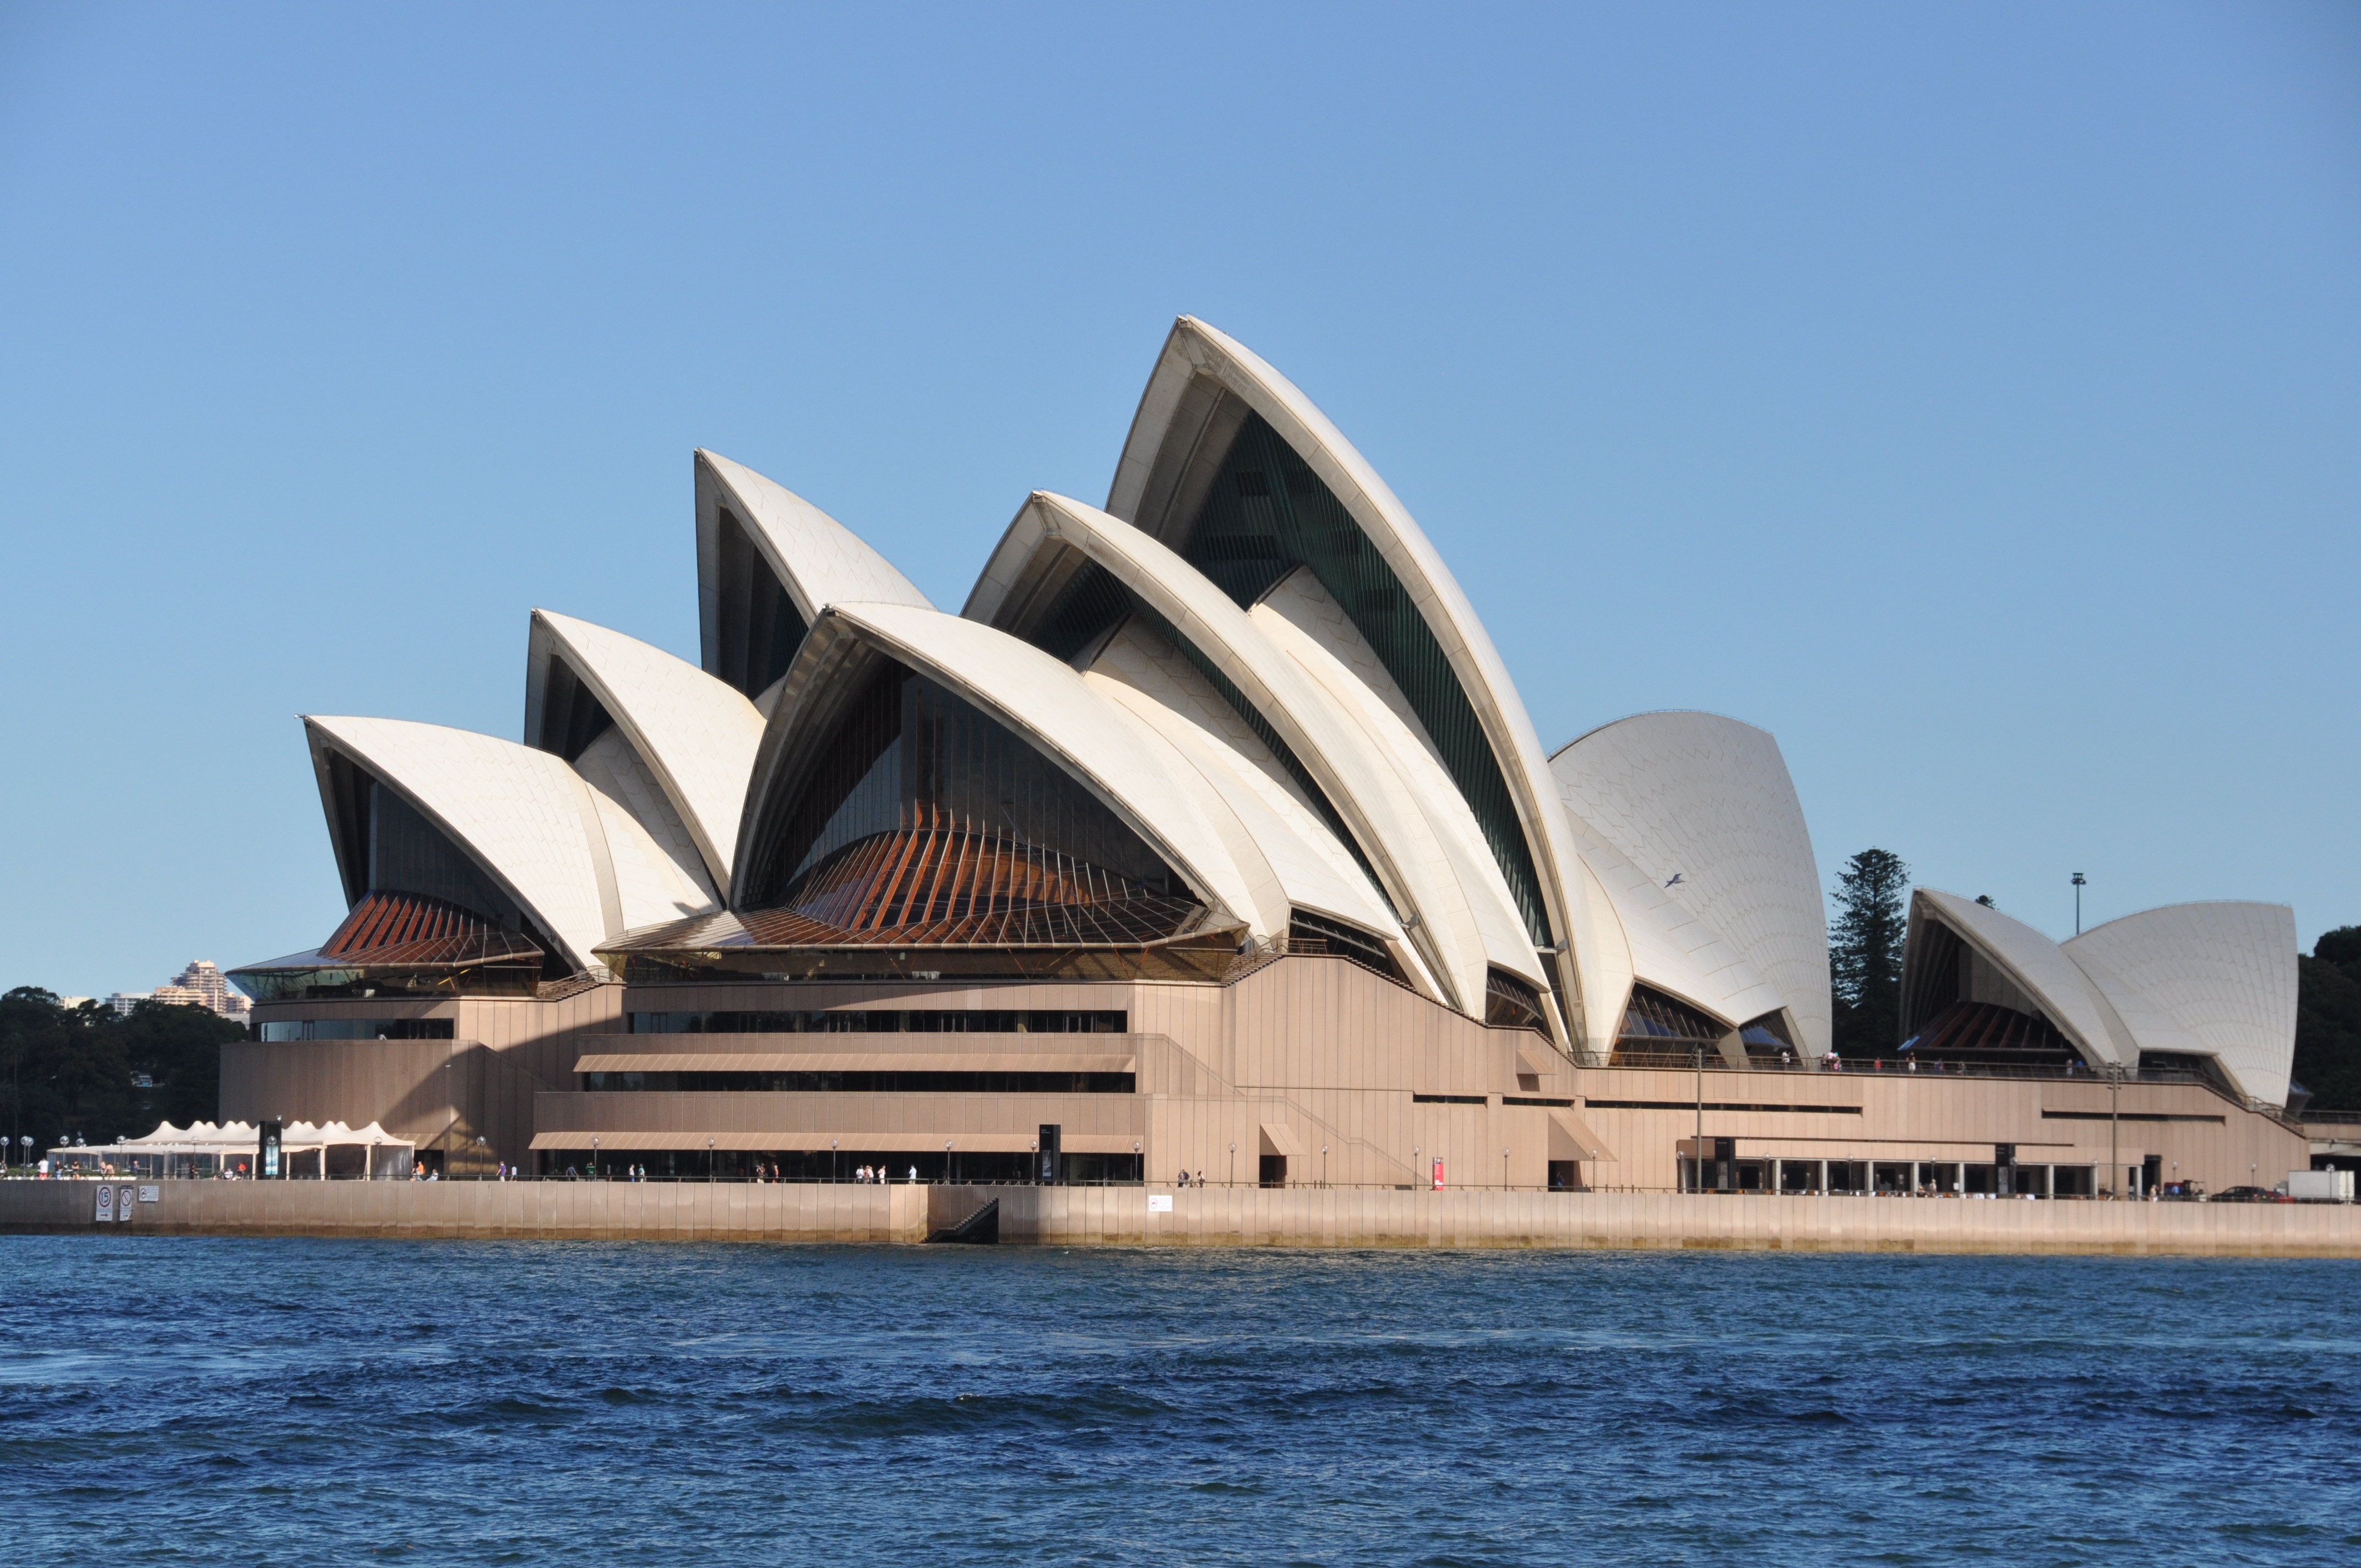 【携程攻略】悉尼悉尼歌剧院景点,澳大利亚的标志性建筑,在对面的植物